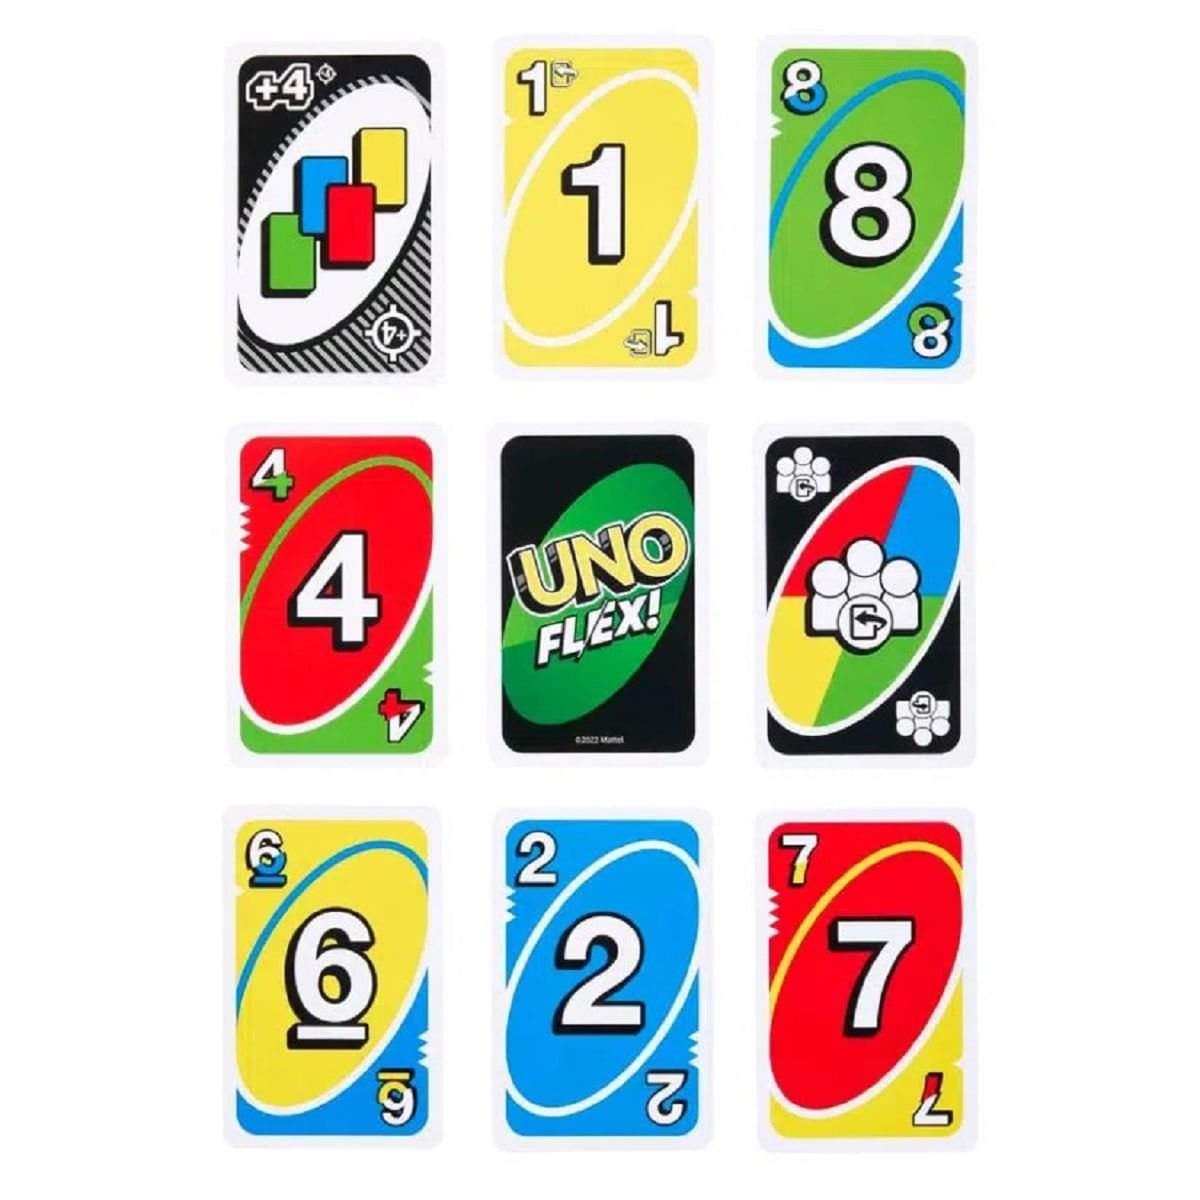 Jogo Uno Original Com Cartas Para Personalizar - R$ 29,4